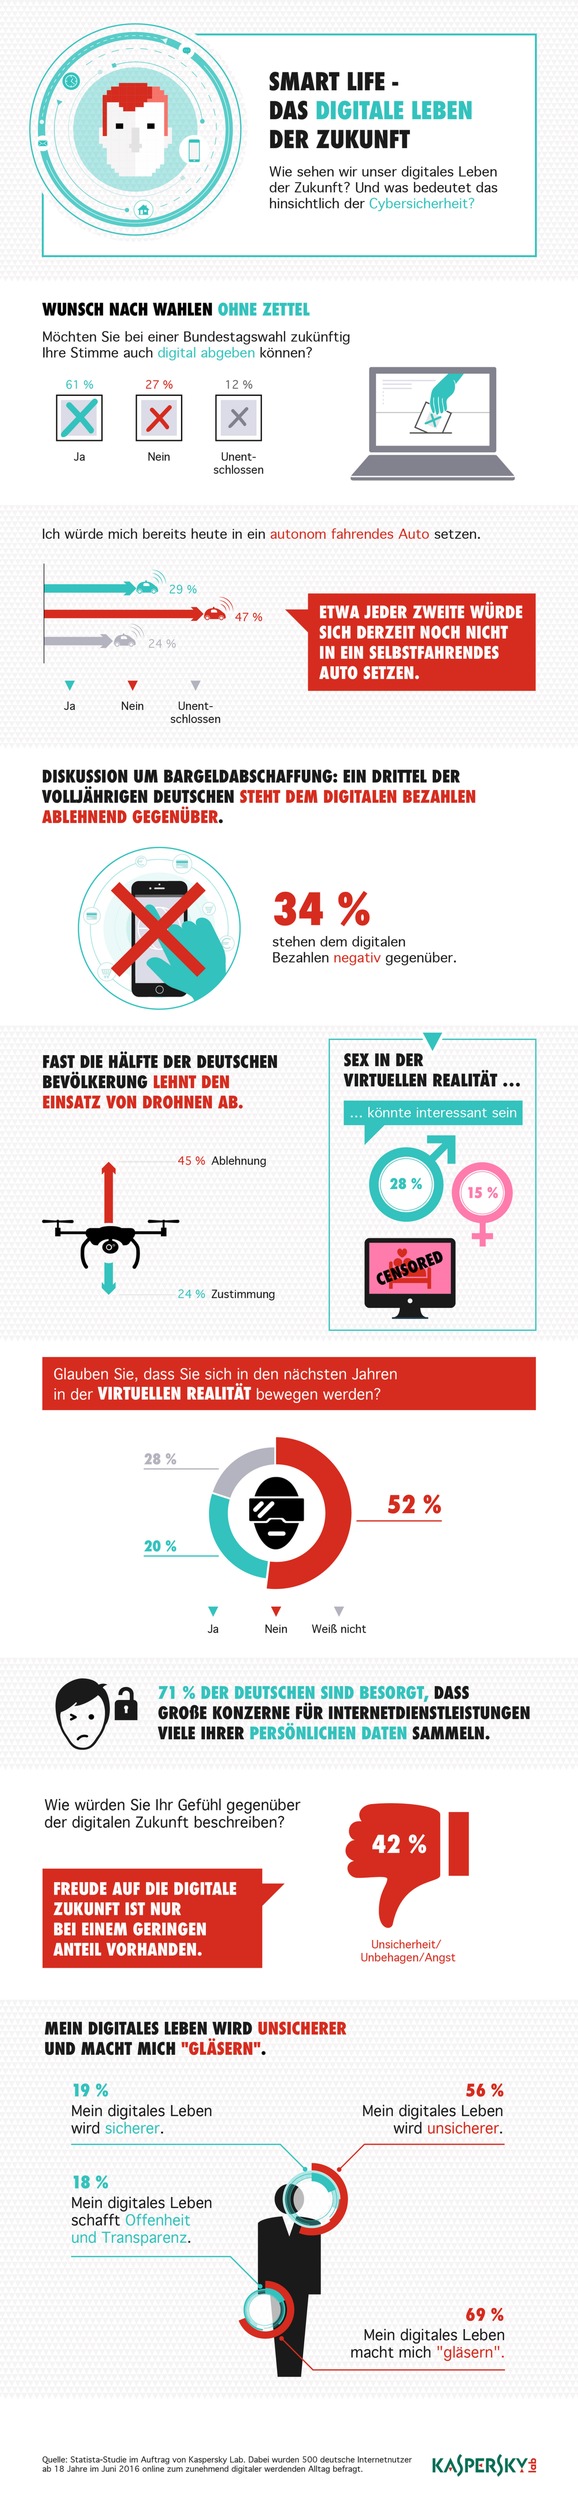 Kaspersky-Studie zur IFA: Deutsche skeptisch bei Virtual Reality, Drohnen und digitalem Bezahlen